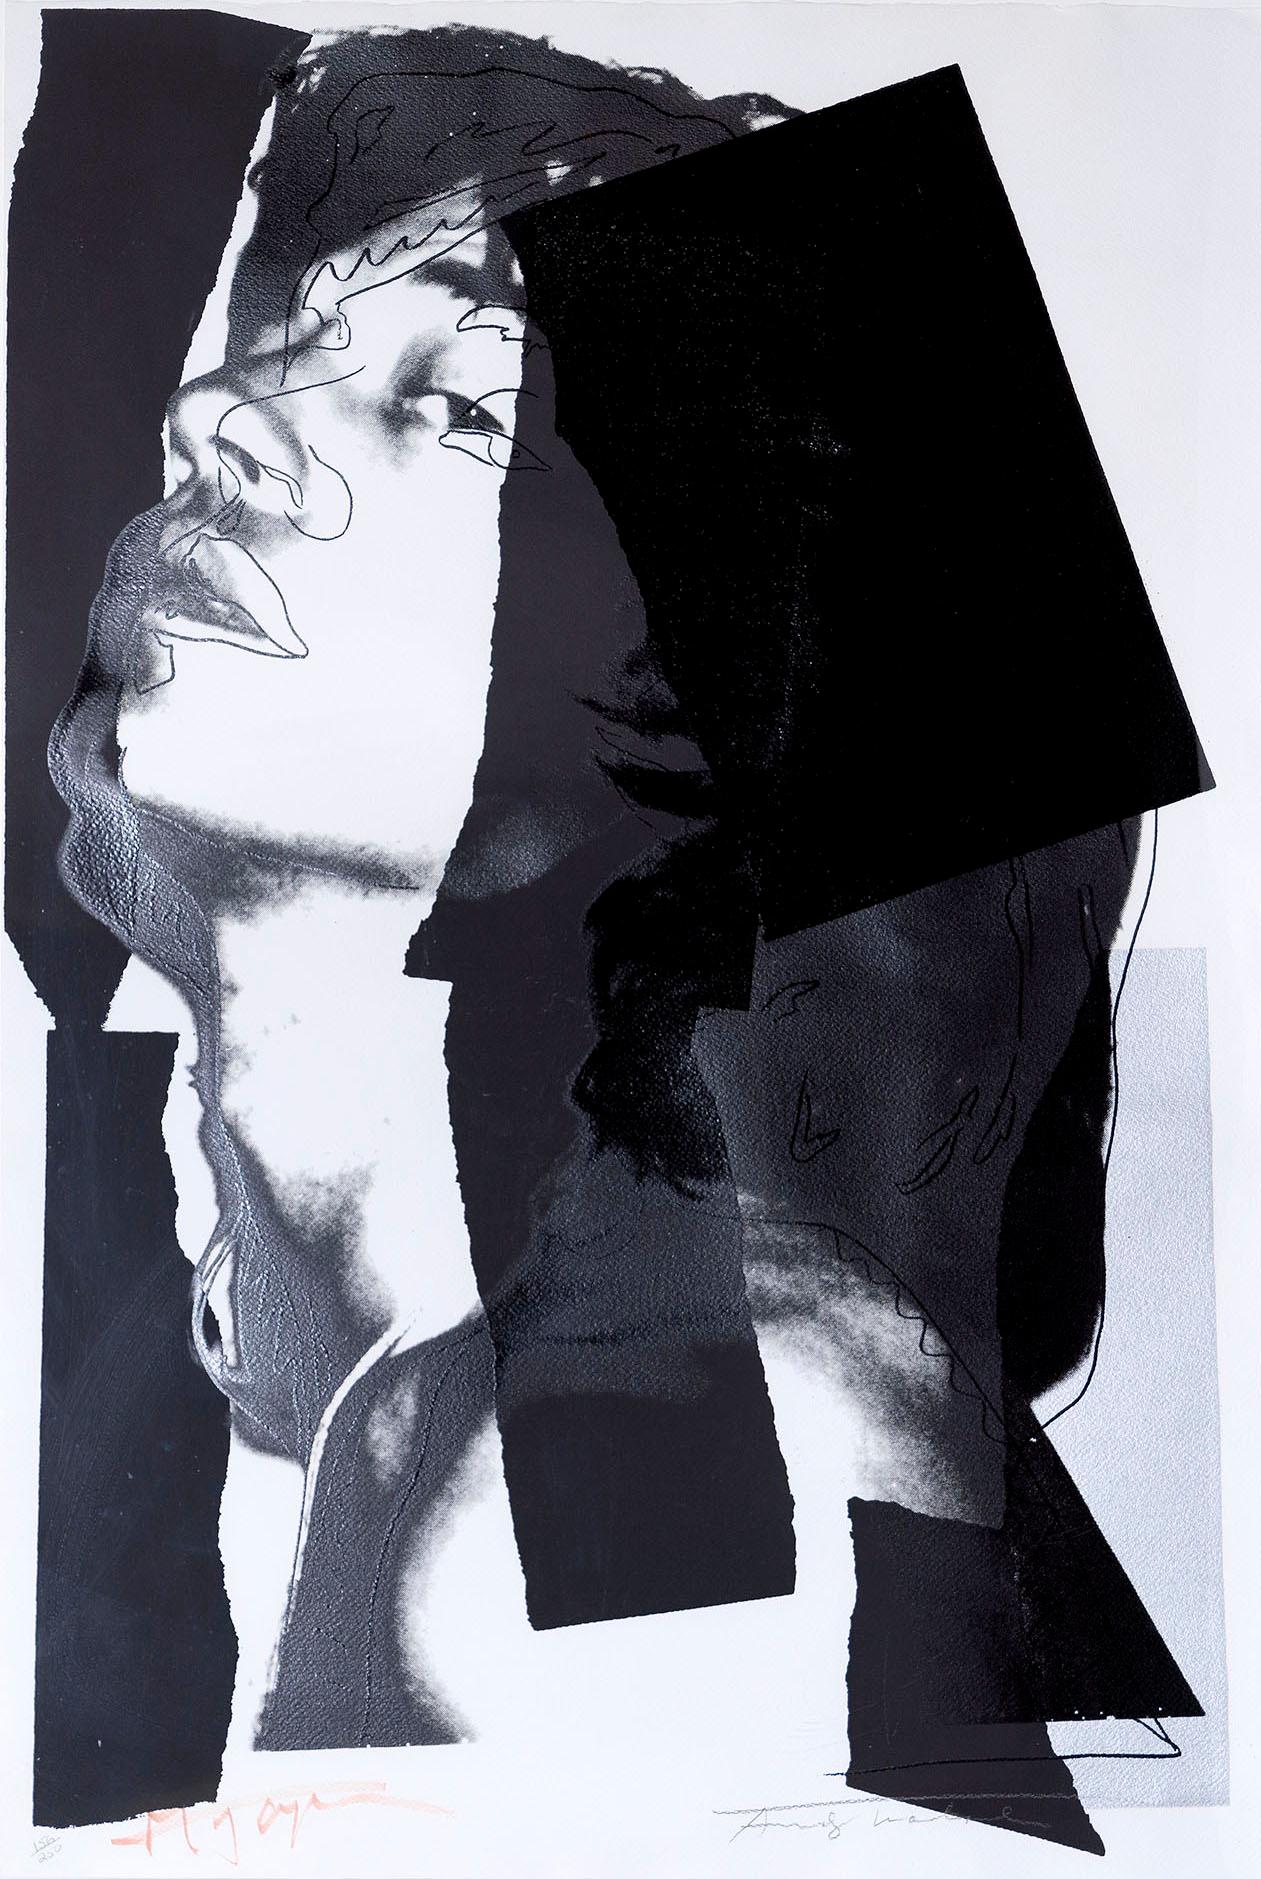 Andy Warhol Portrait Print - Mick Jagger